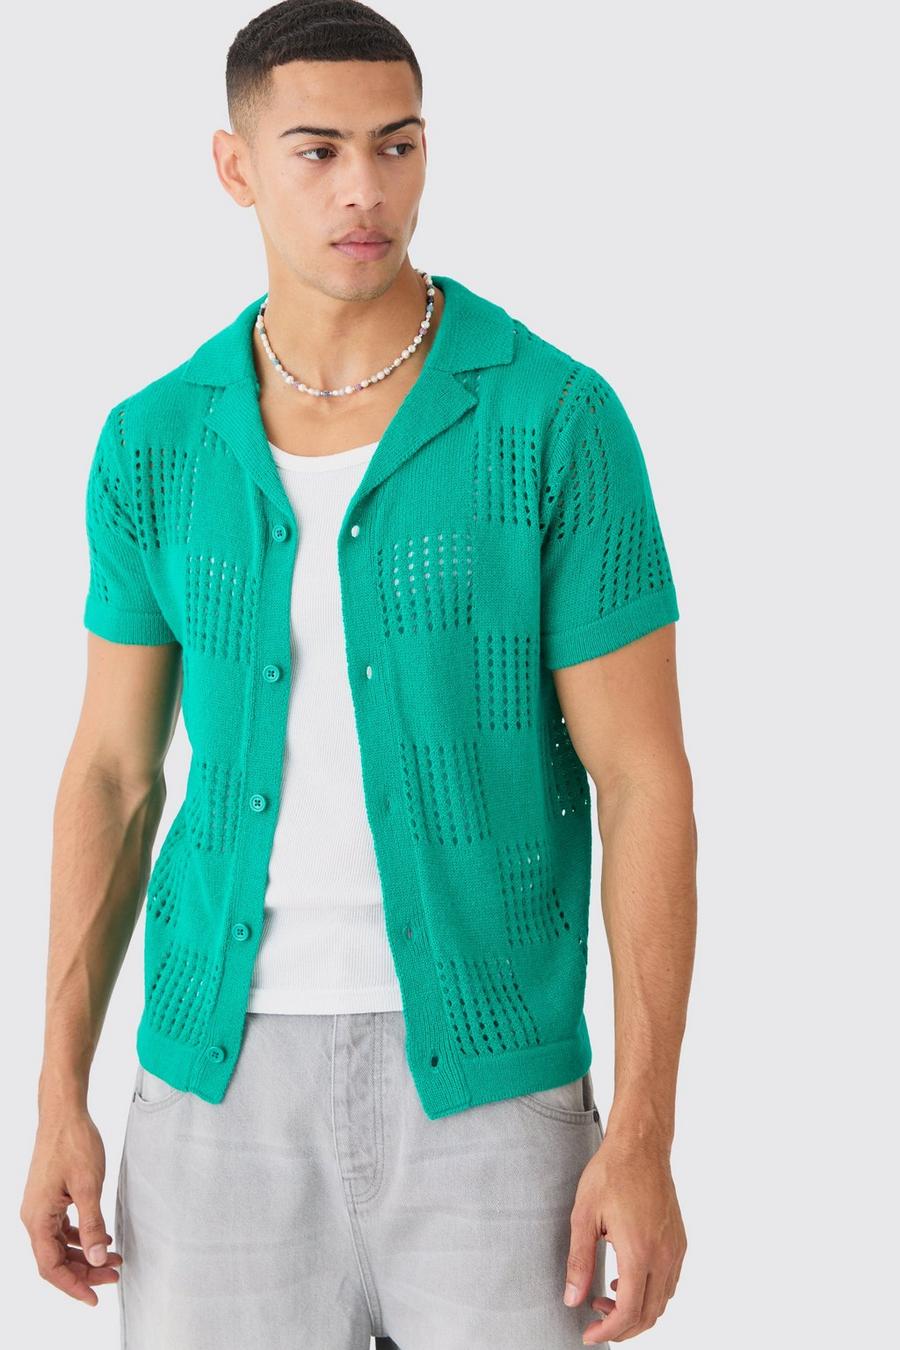 Kurzärmliges grünes Hemd mit Schachbrett-Print, Green